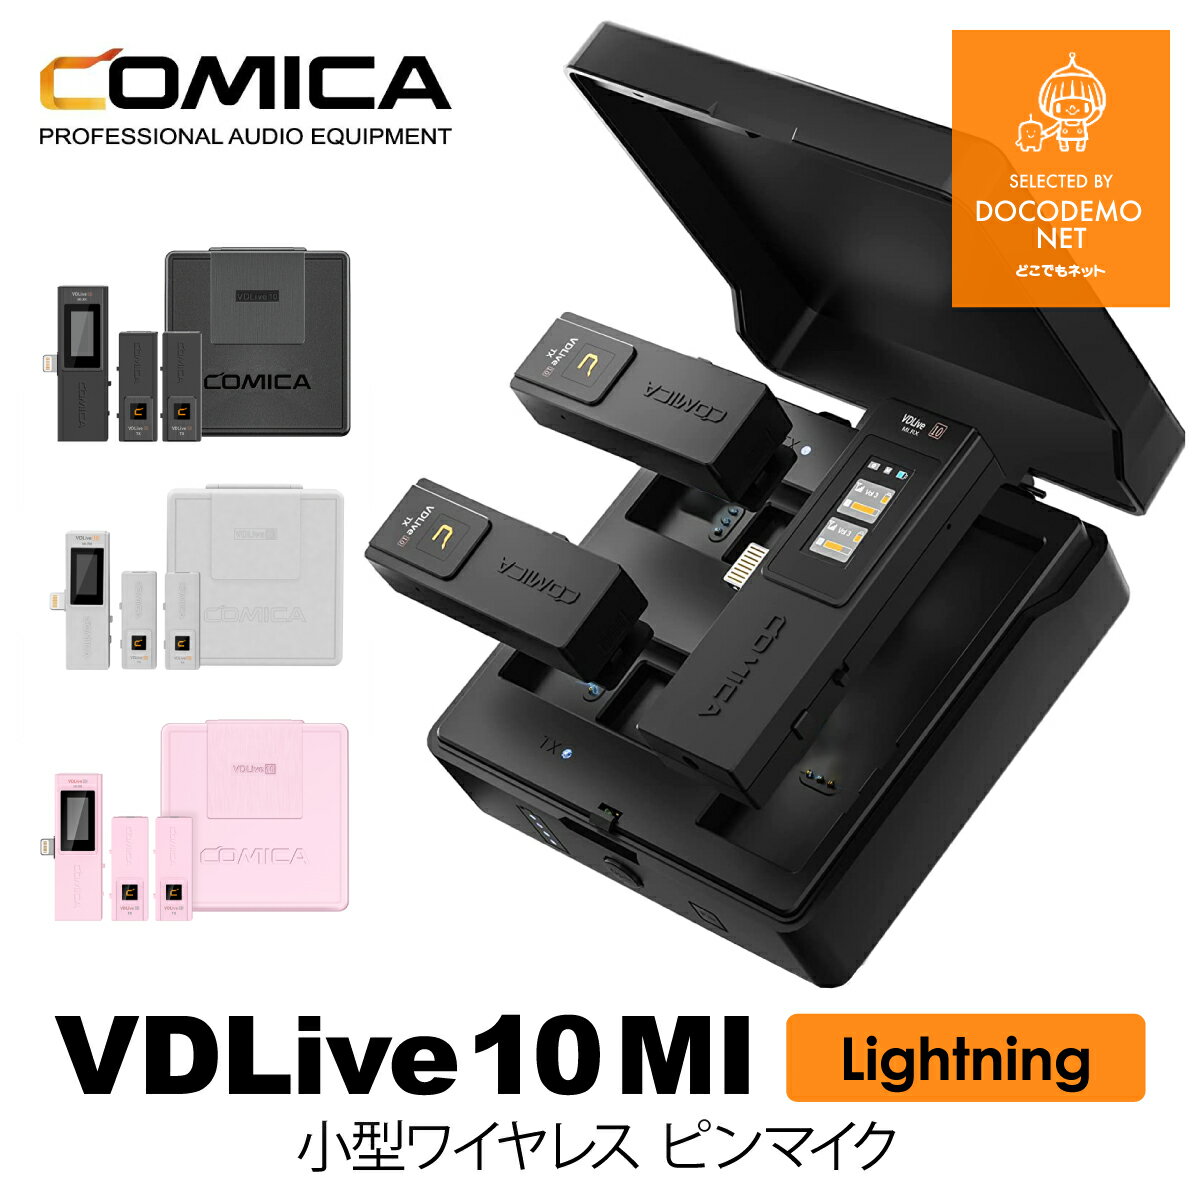 COMICA VDLive10 MI スマホ外付けマイク iPhone用 ワイヤレスピンマイクシステム ライトニング lighting 一眼レフカメラステレオマイク 多機能 Lightning/3.5mm出力端子 全指向性2.4GHz無線ラベリアマイク iPhone/Mac/iPadマイク 並行輸入品 送料無料 